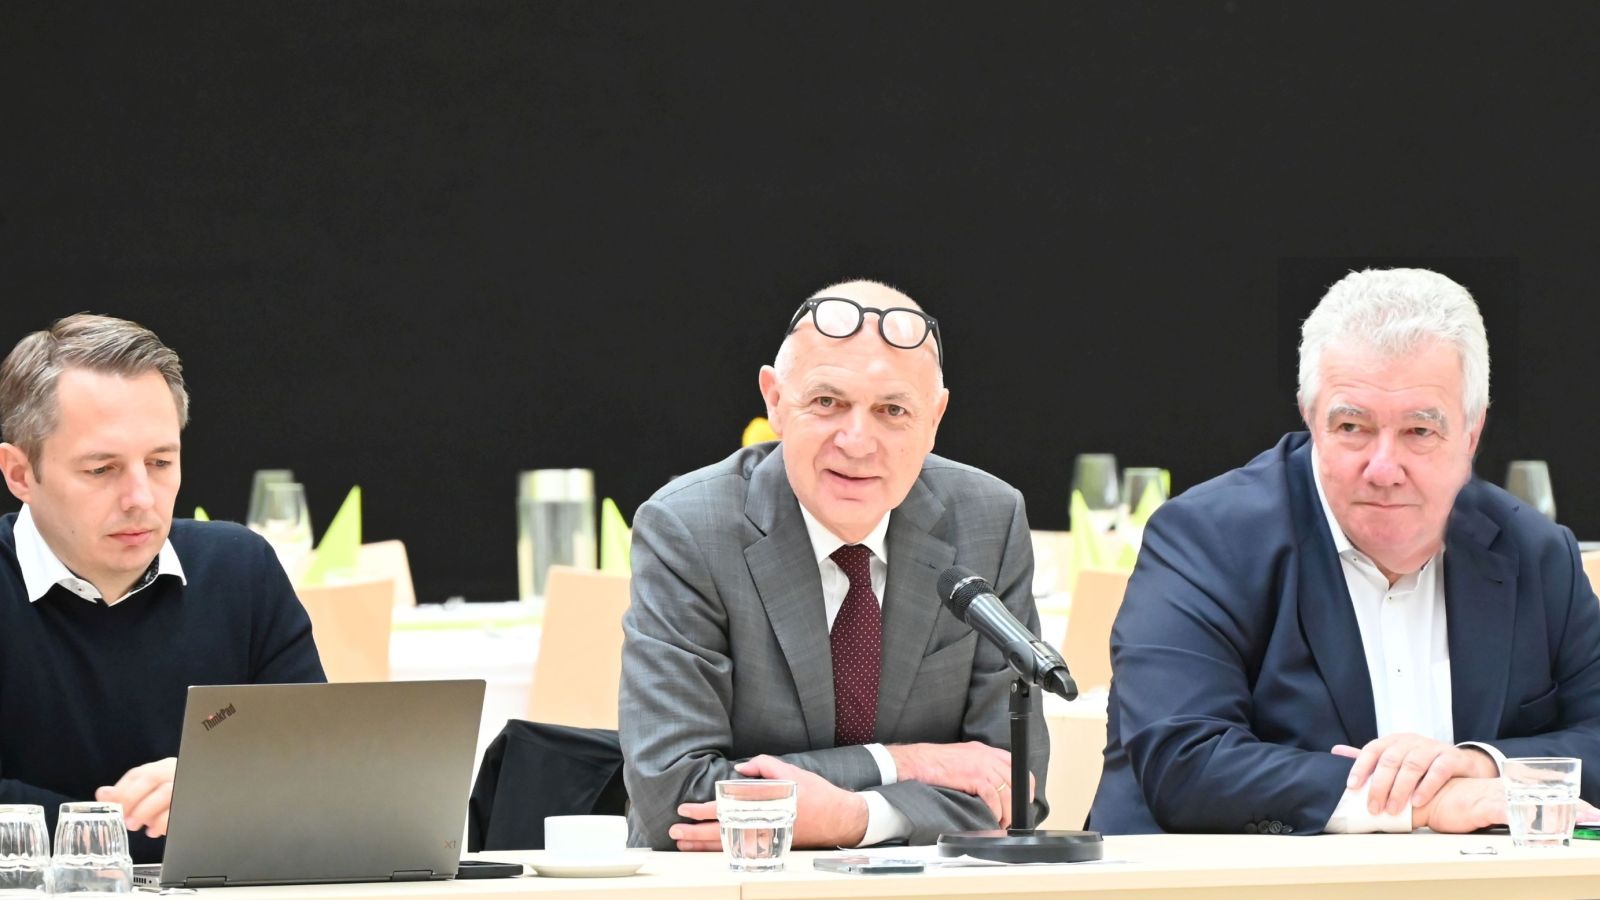 Im Rahmen des Gedankenaustauschs auf der WDFV-Beiratstagung in Duisburg sind auf dem Bild vier Personen zu sehen: DFB-Schatzmeister Stephan Grunwald, DFB-Präsident Bernd Neuendorf, WDFV-Präsident Peter Frymuth und WDFV-Schatzmeister Sascha Hendrich-Bächer.